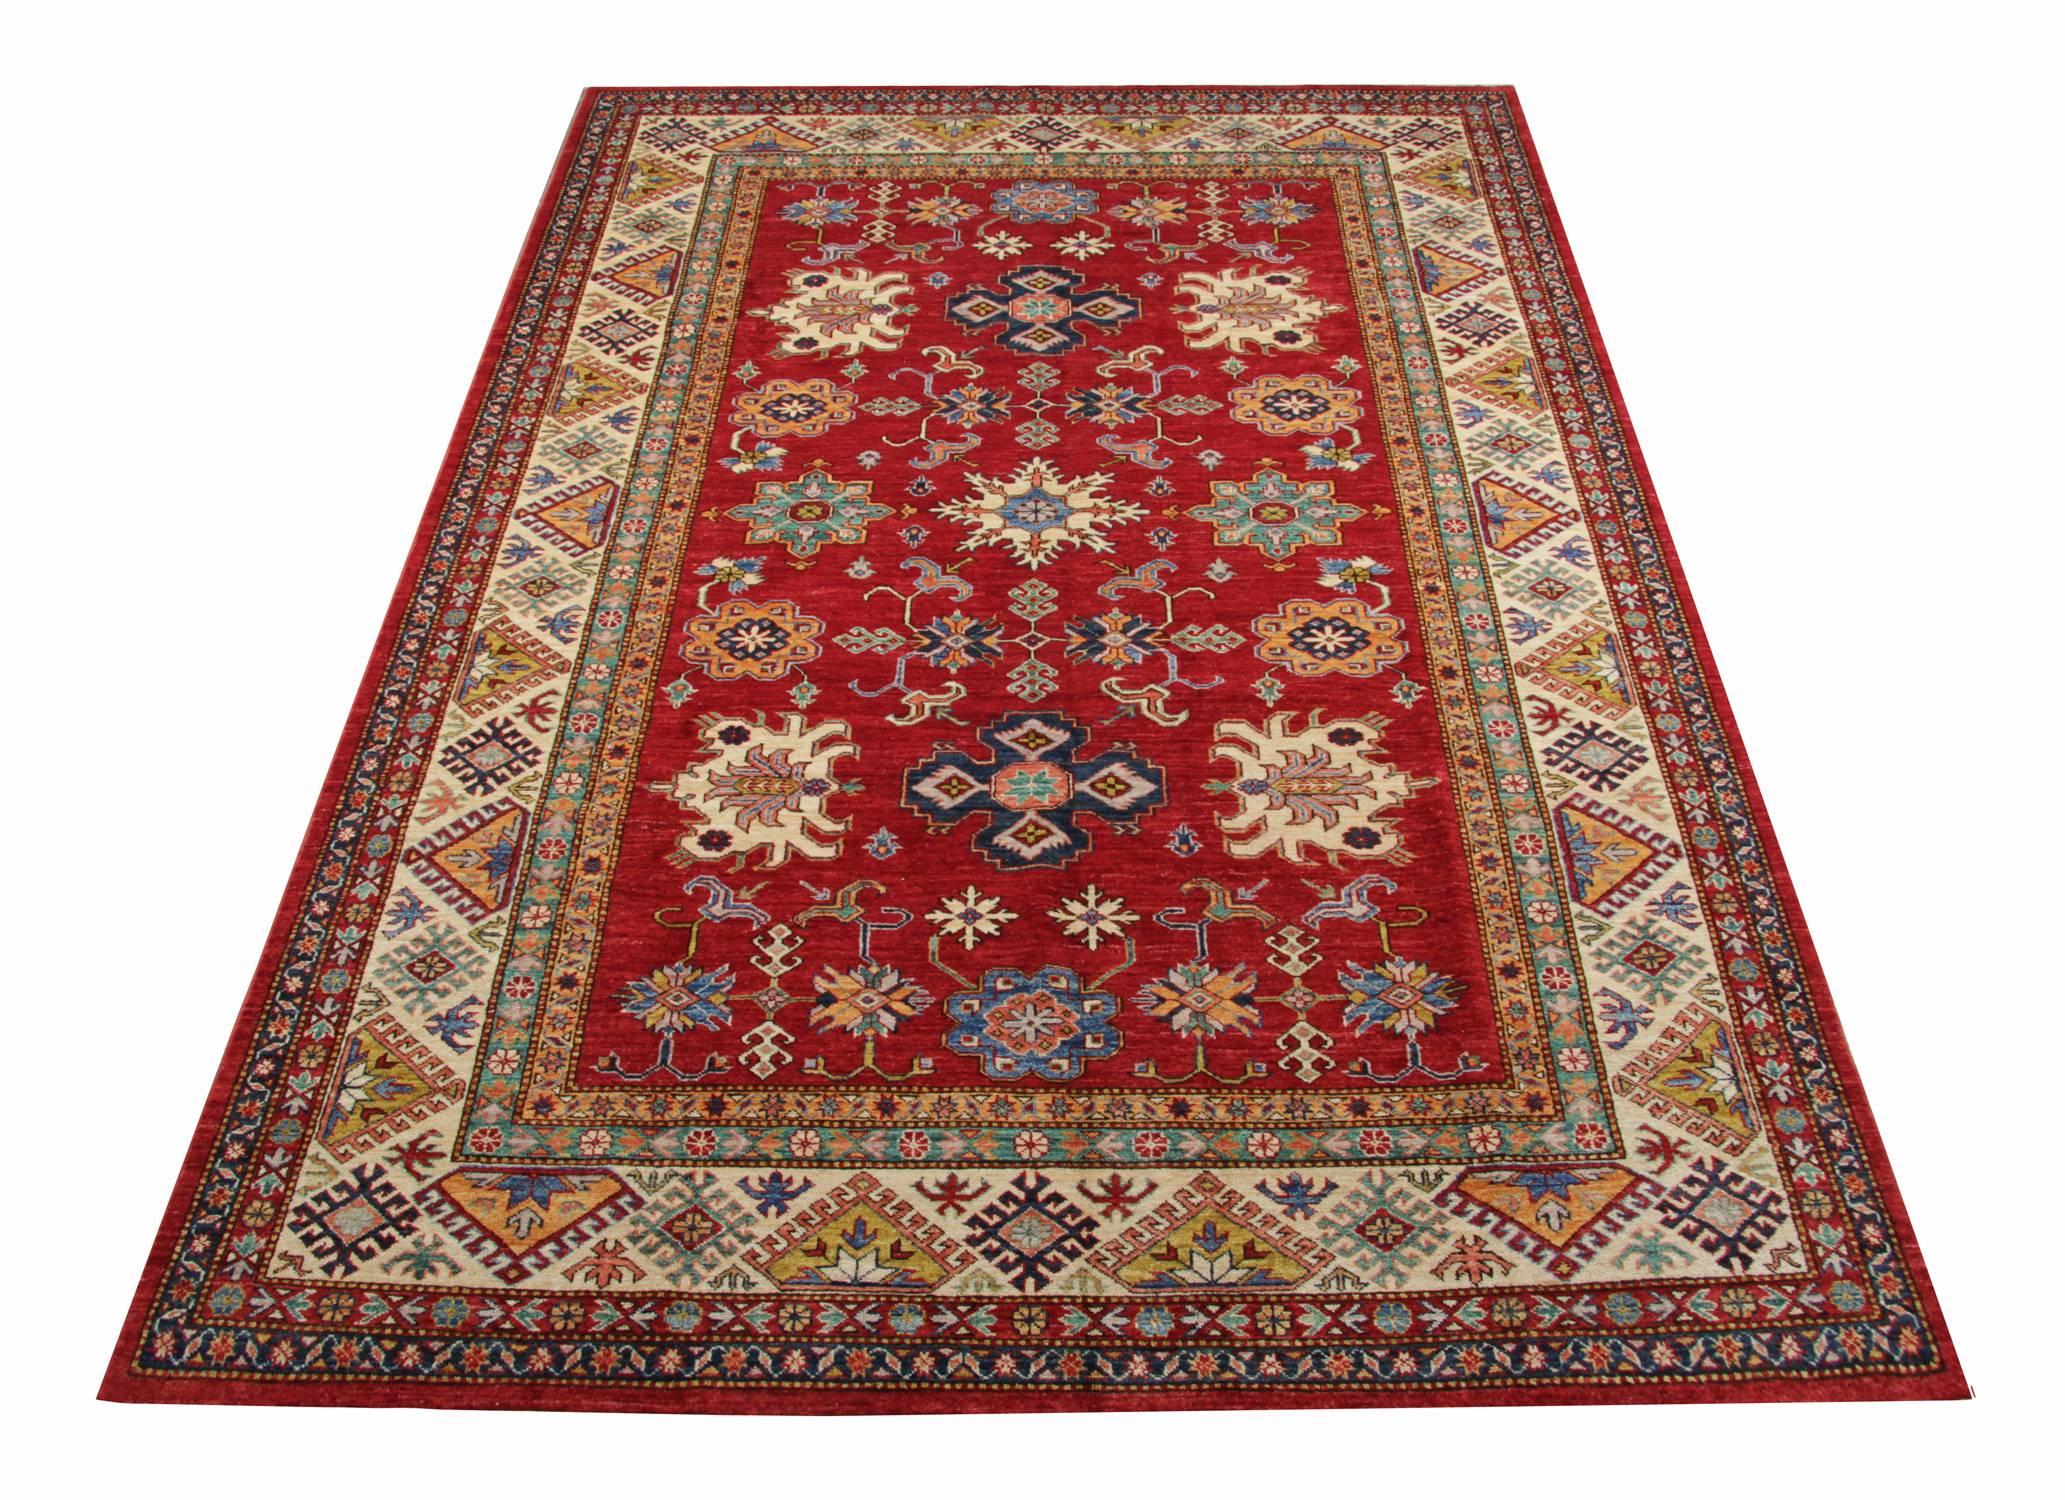 Les tapis kazakhs faits à la main sont des tapis orientaux à motifs et sont principalement produits dans les villages plutôt que dans les villes. Ce tapis rouge est fabriqué à partir de matériaux organiques propres à chaque province tribale. Les